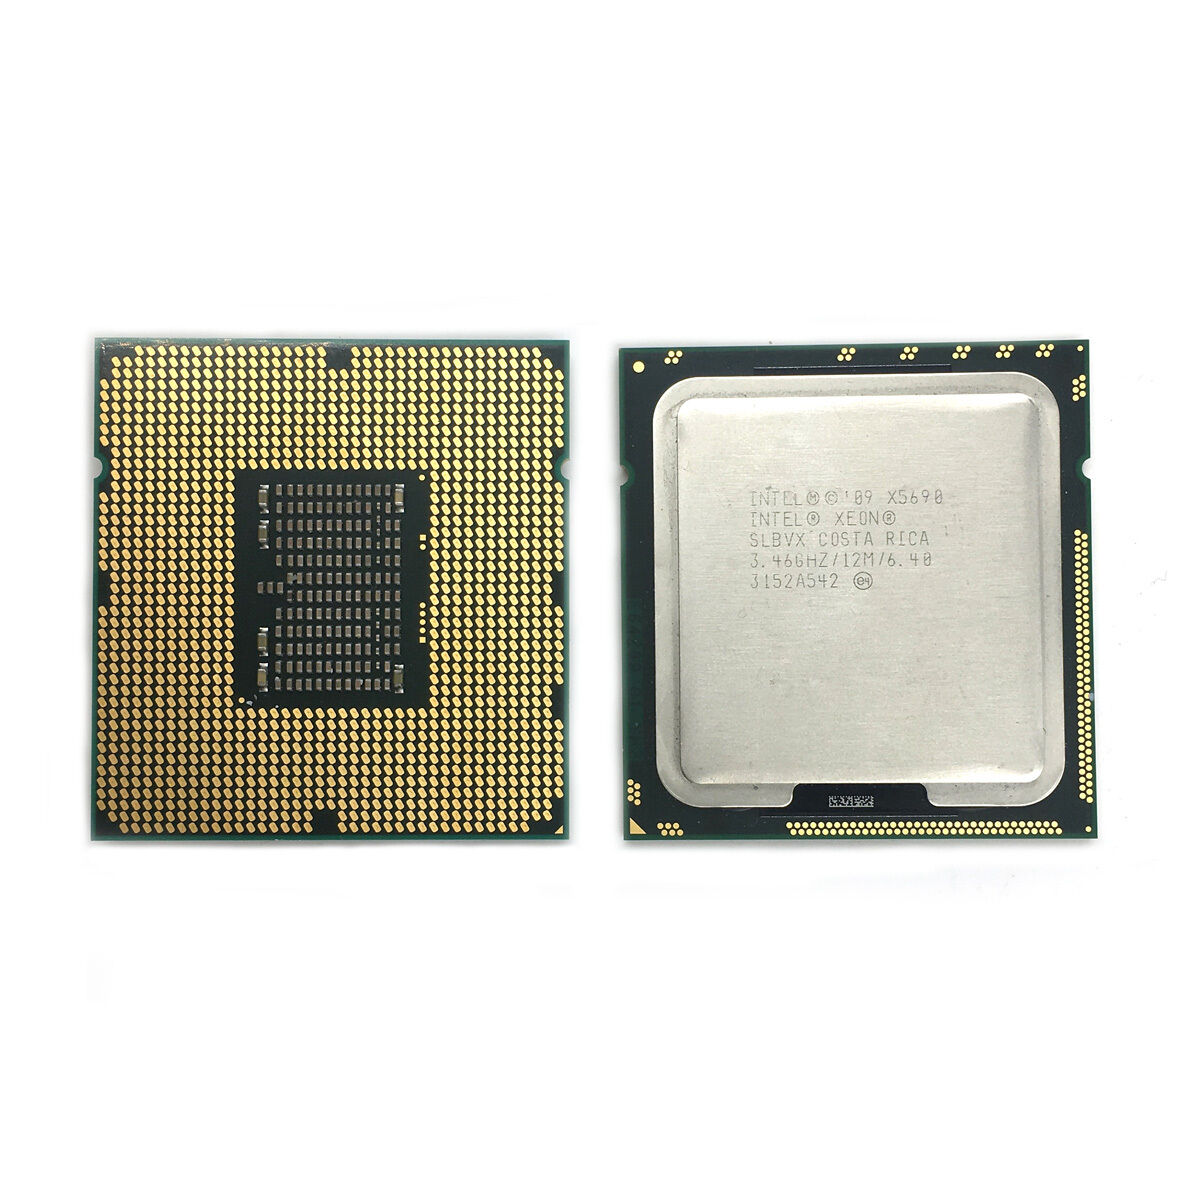 2pcs Intel Xeon X5690 3.46GHz 12MB 6-Cores 6.40GT/s LGA1366 SLBVX Matching Pair